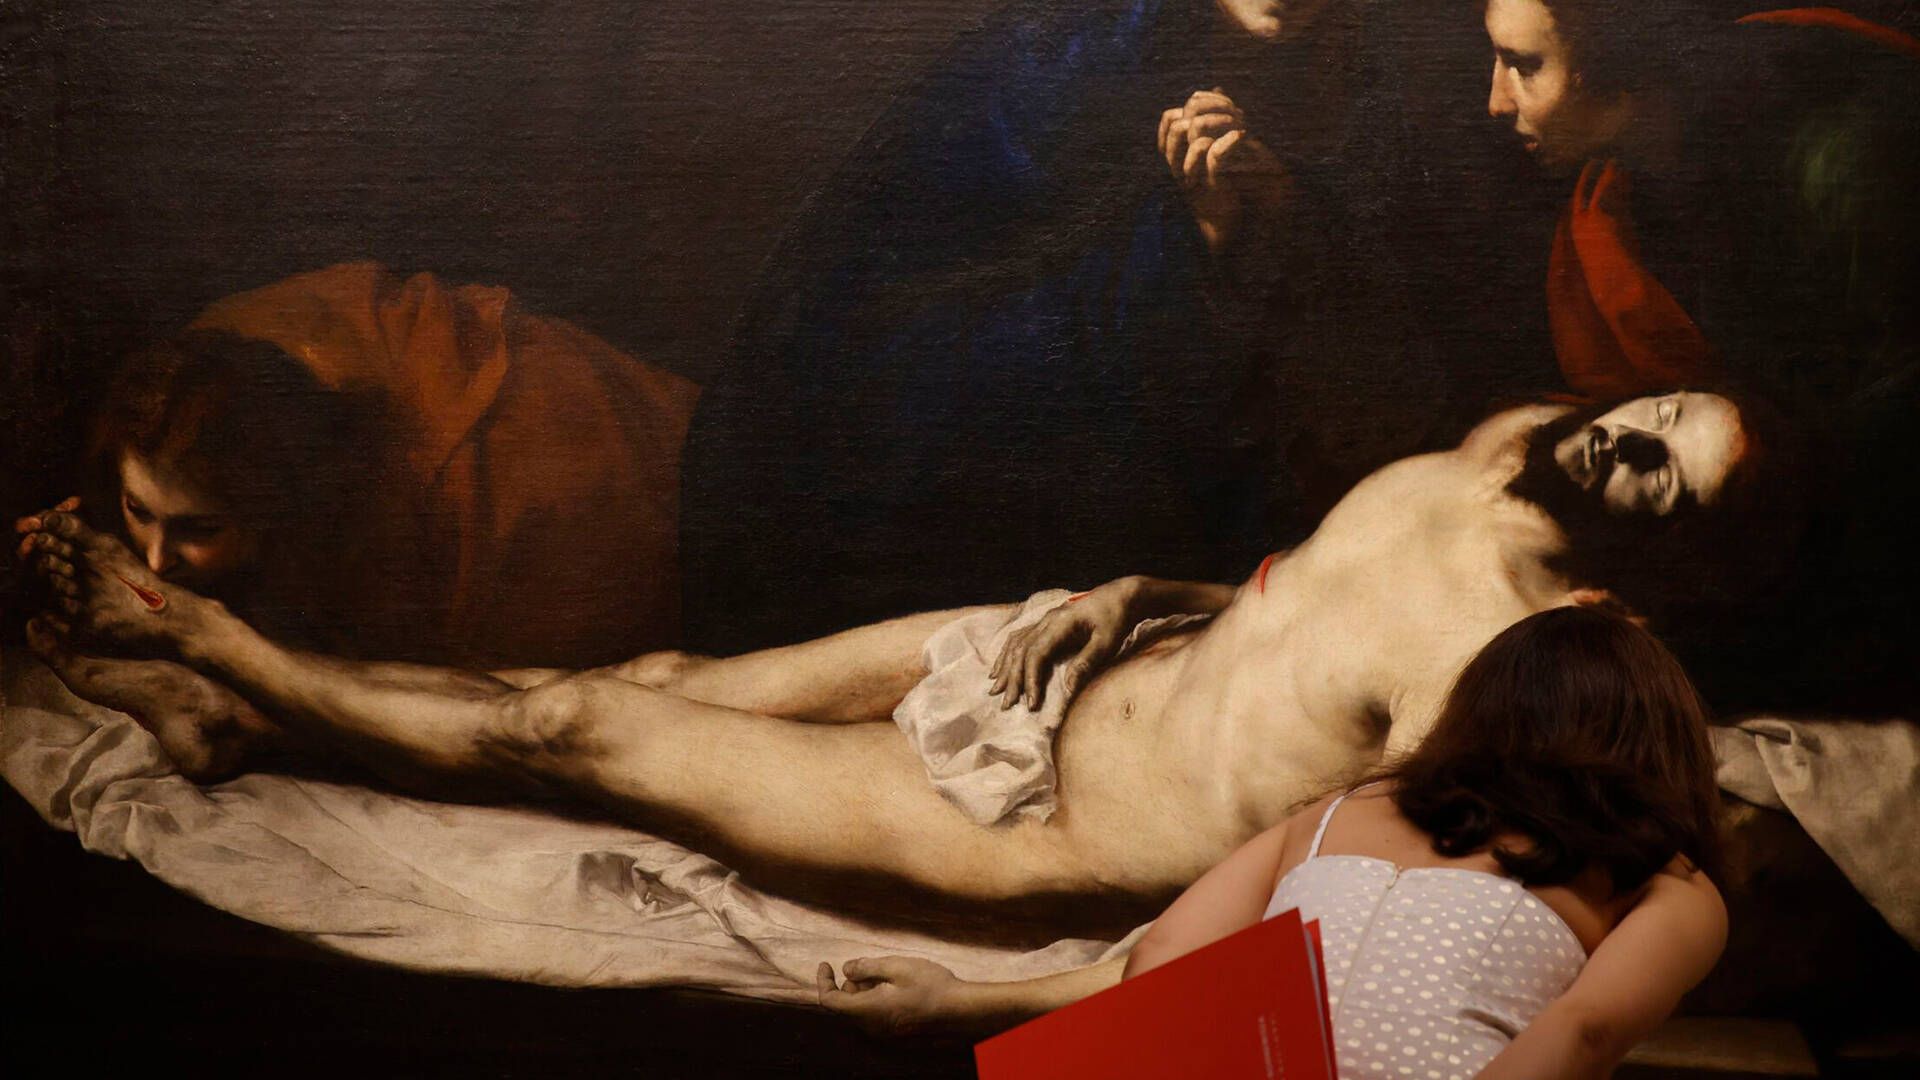 Una joven contempla 'La Piedad', de José Ribera, una de las obras que componen la exposición 'Lo oculto' en el Thyssen-Bornemisza. (EFE/Javier Lizón)